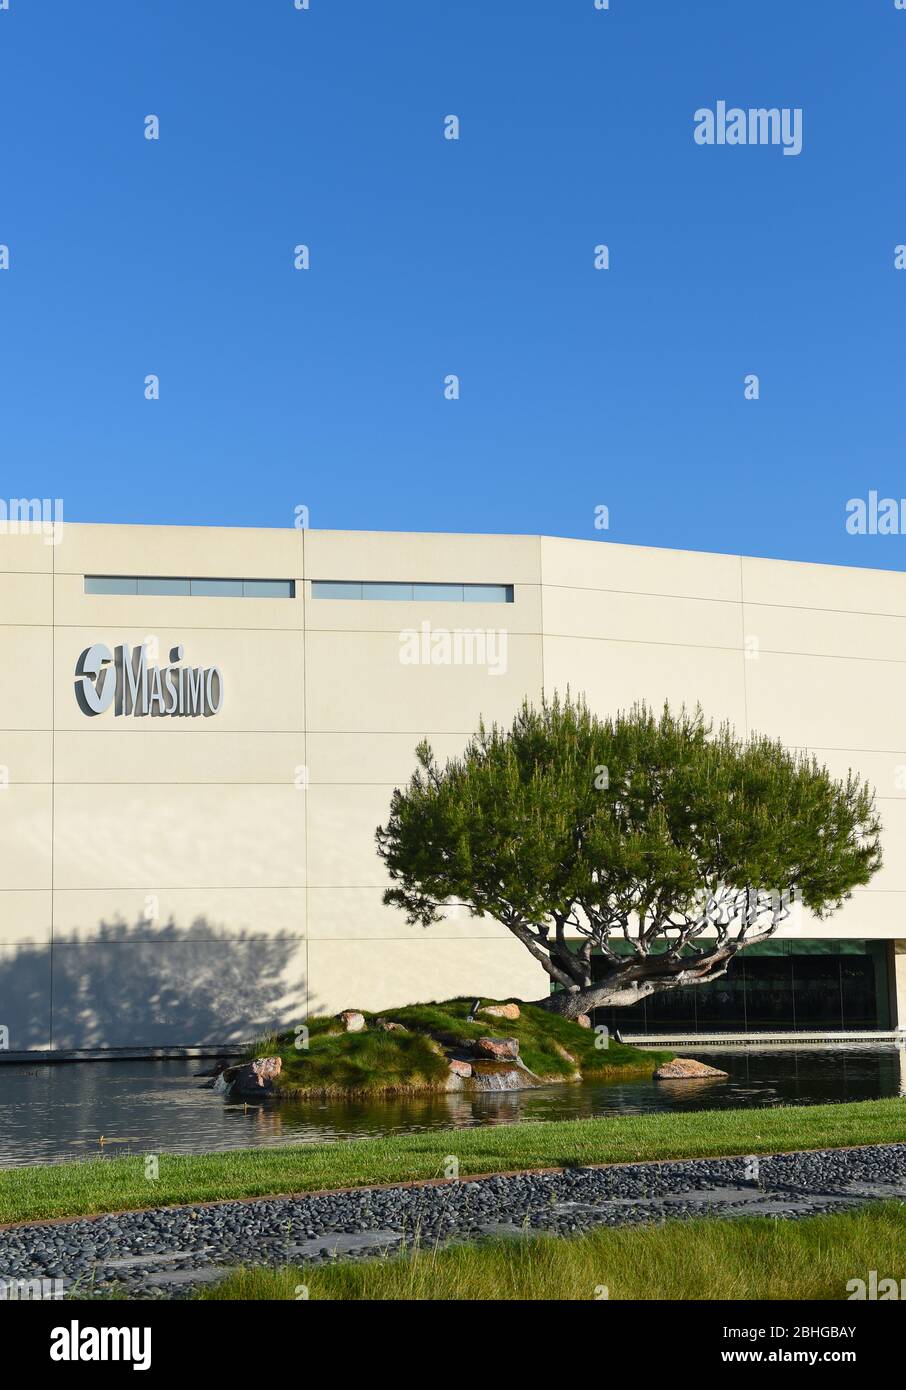 IRVINE, CALIFORNIE - 25 AVRIL 2020 : immeuble du siège social de Masimo, une société mondiale de technologie médicale qui développe et fabrique des produits innovants non-inv Banque D'Images